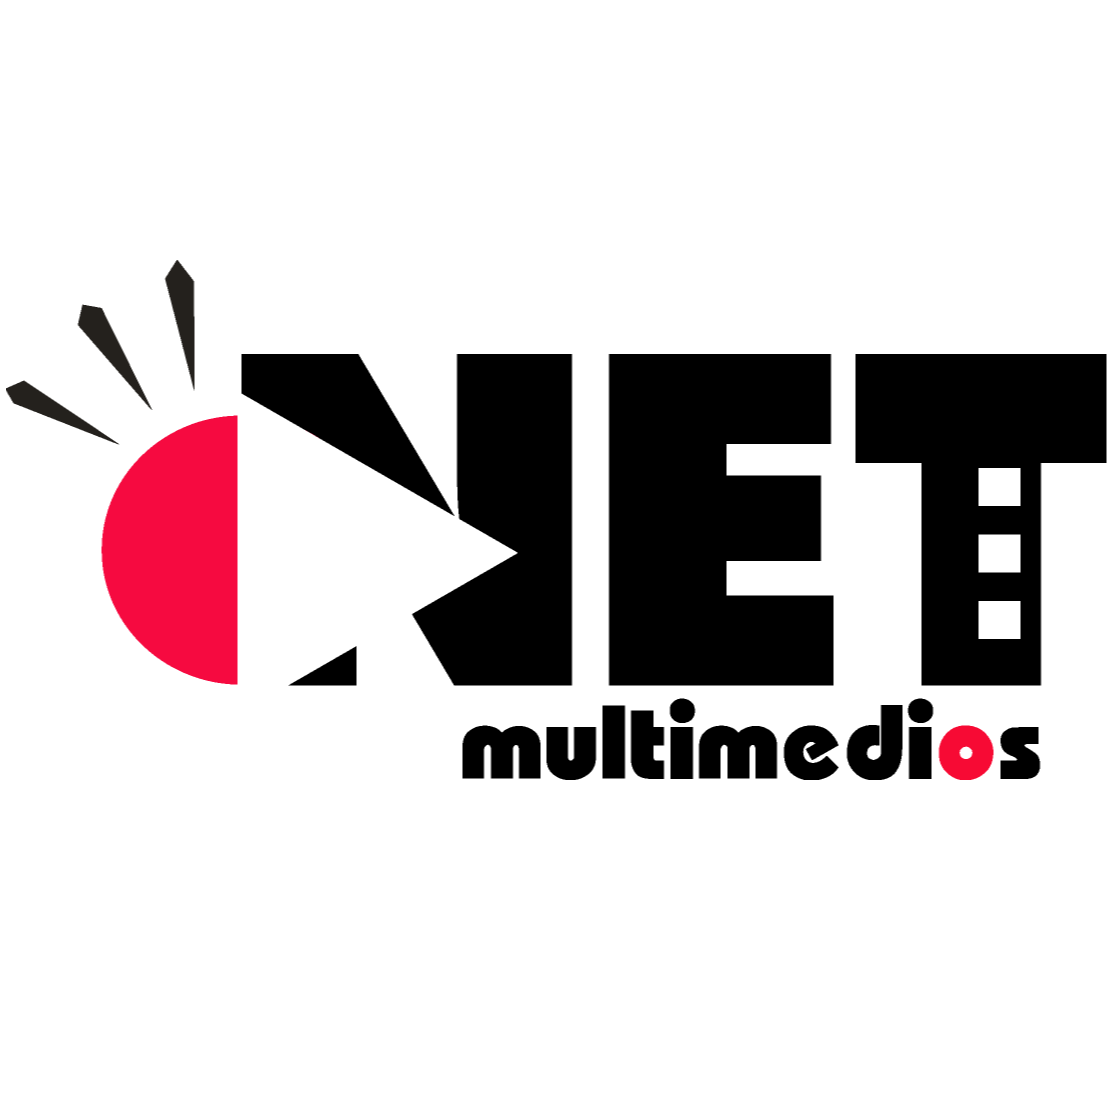 NET Multimedios